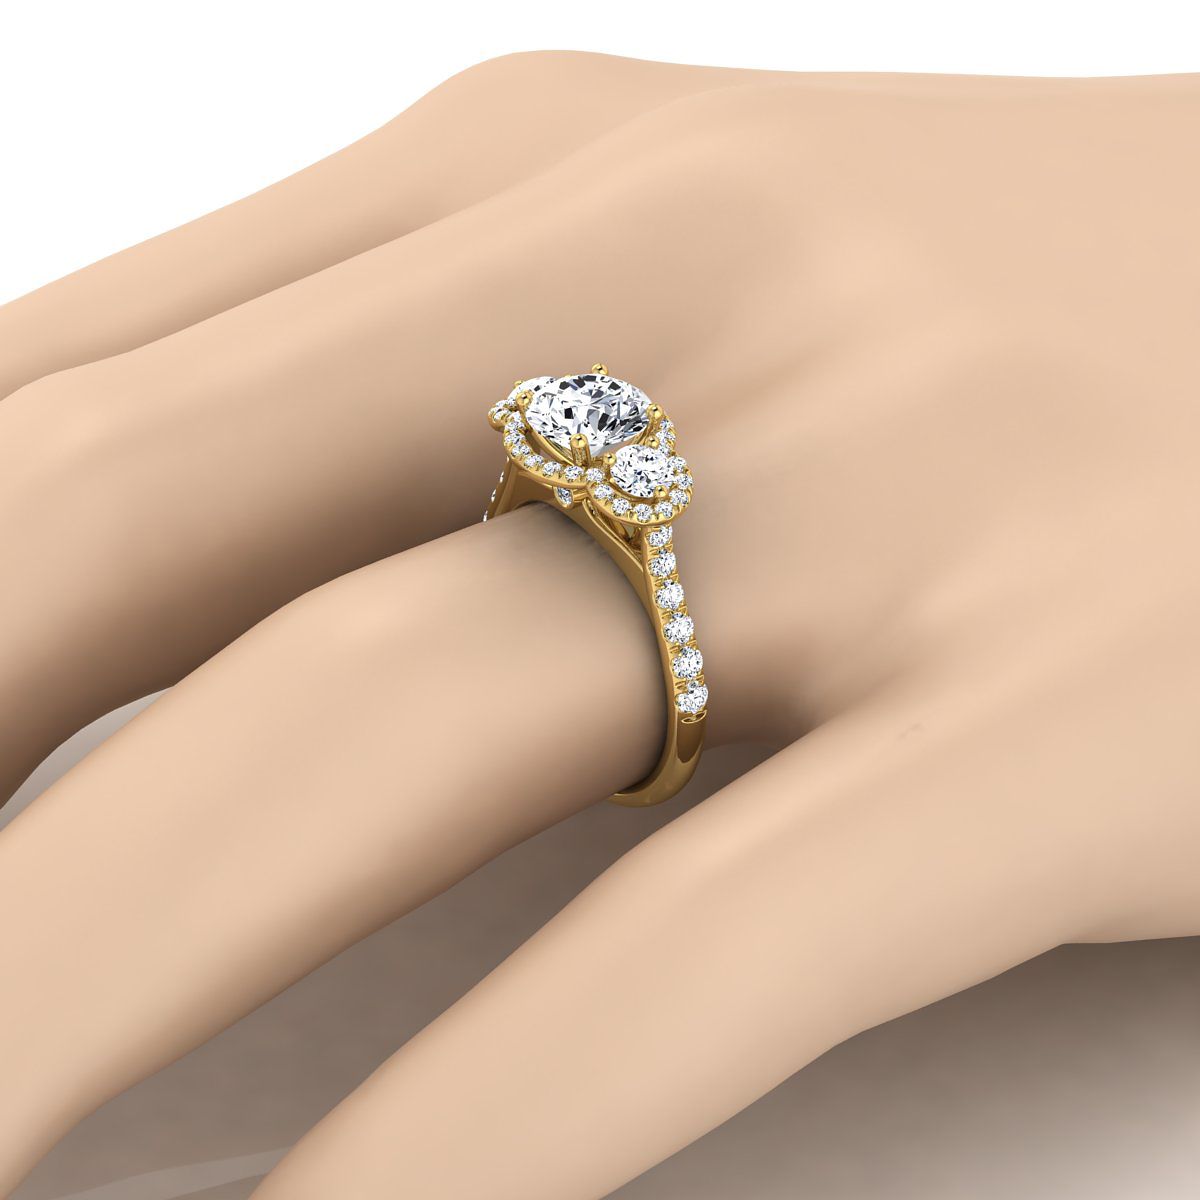 18K Yellow Gold Round Brilliant Diamond อมตะสามหิน Halo พร้อมแหวนหมั้นฝรั่งเศส -3/4ctw